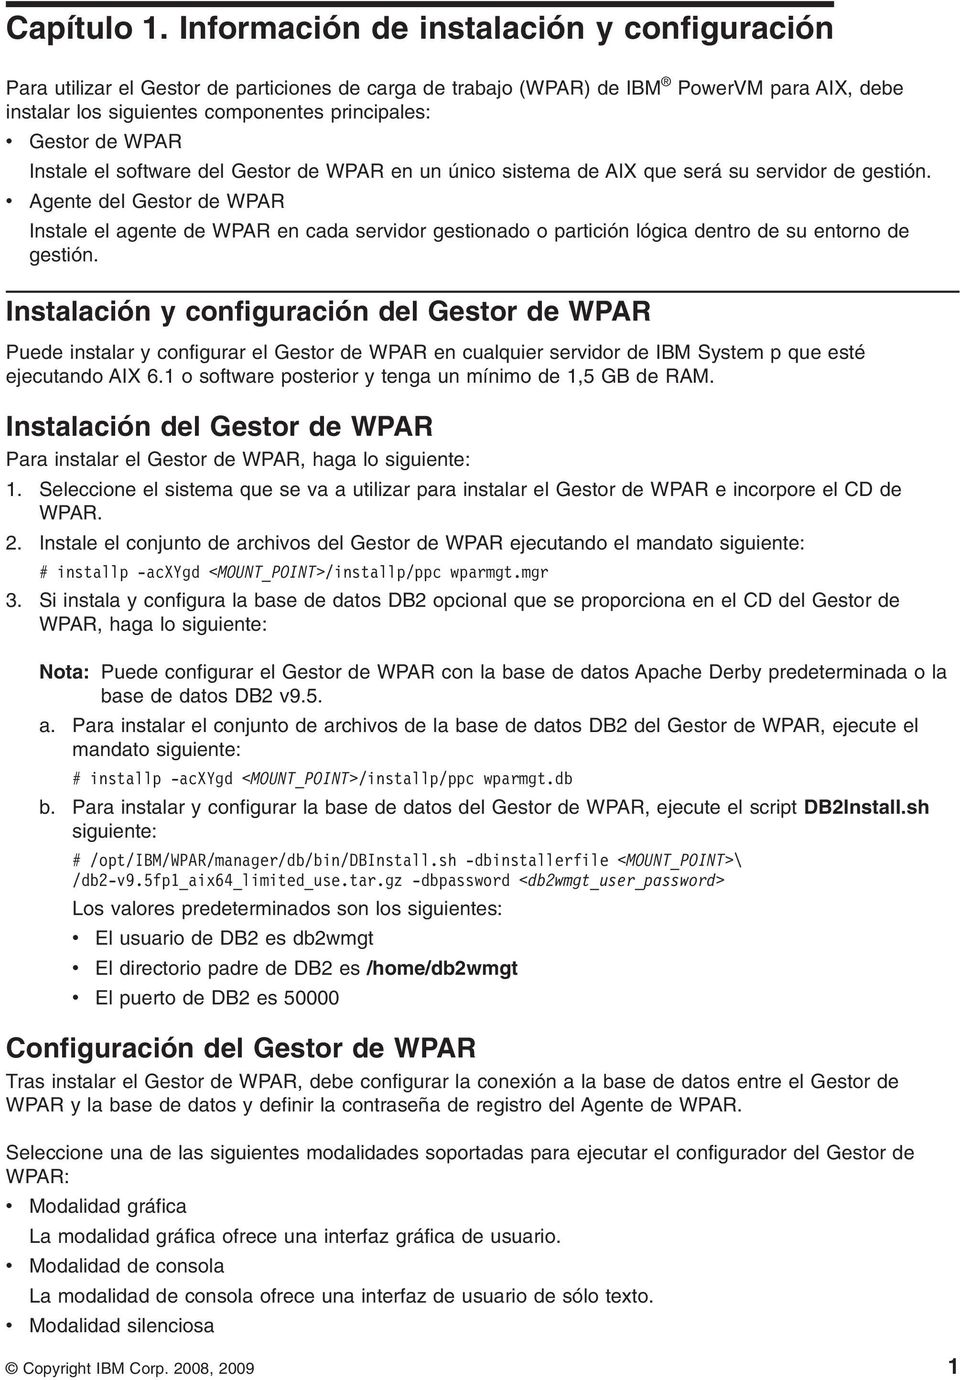 WPAR Instale el software del Gestor de WPAR en un único sistema de AIX que será su servidor de gestión.